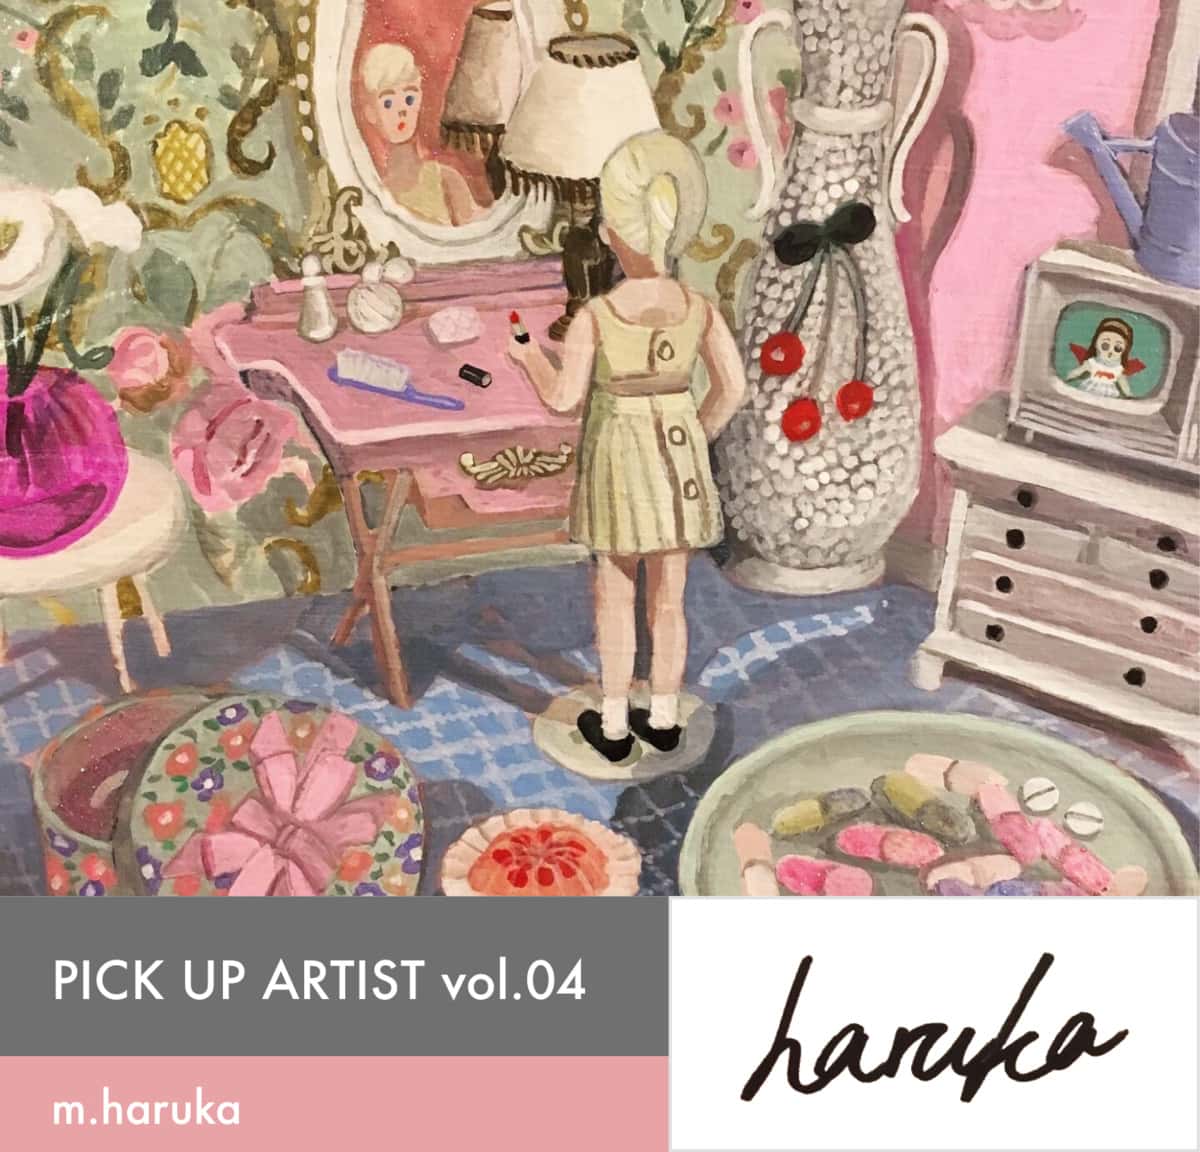 Pick up artist vol.04 m.haruka